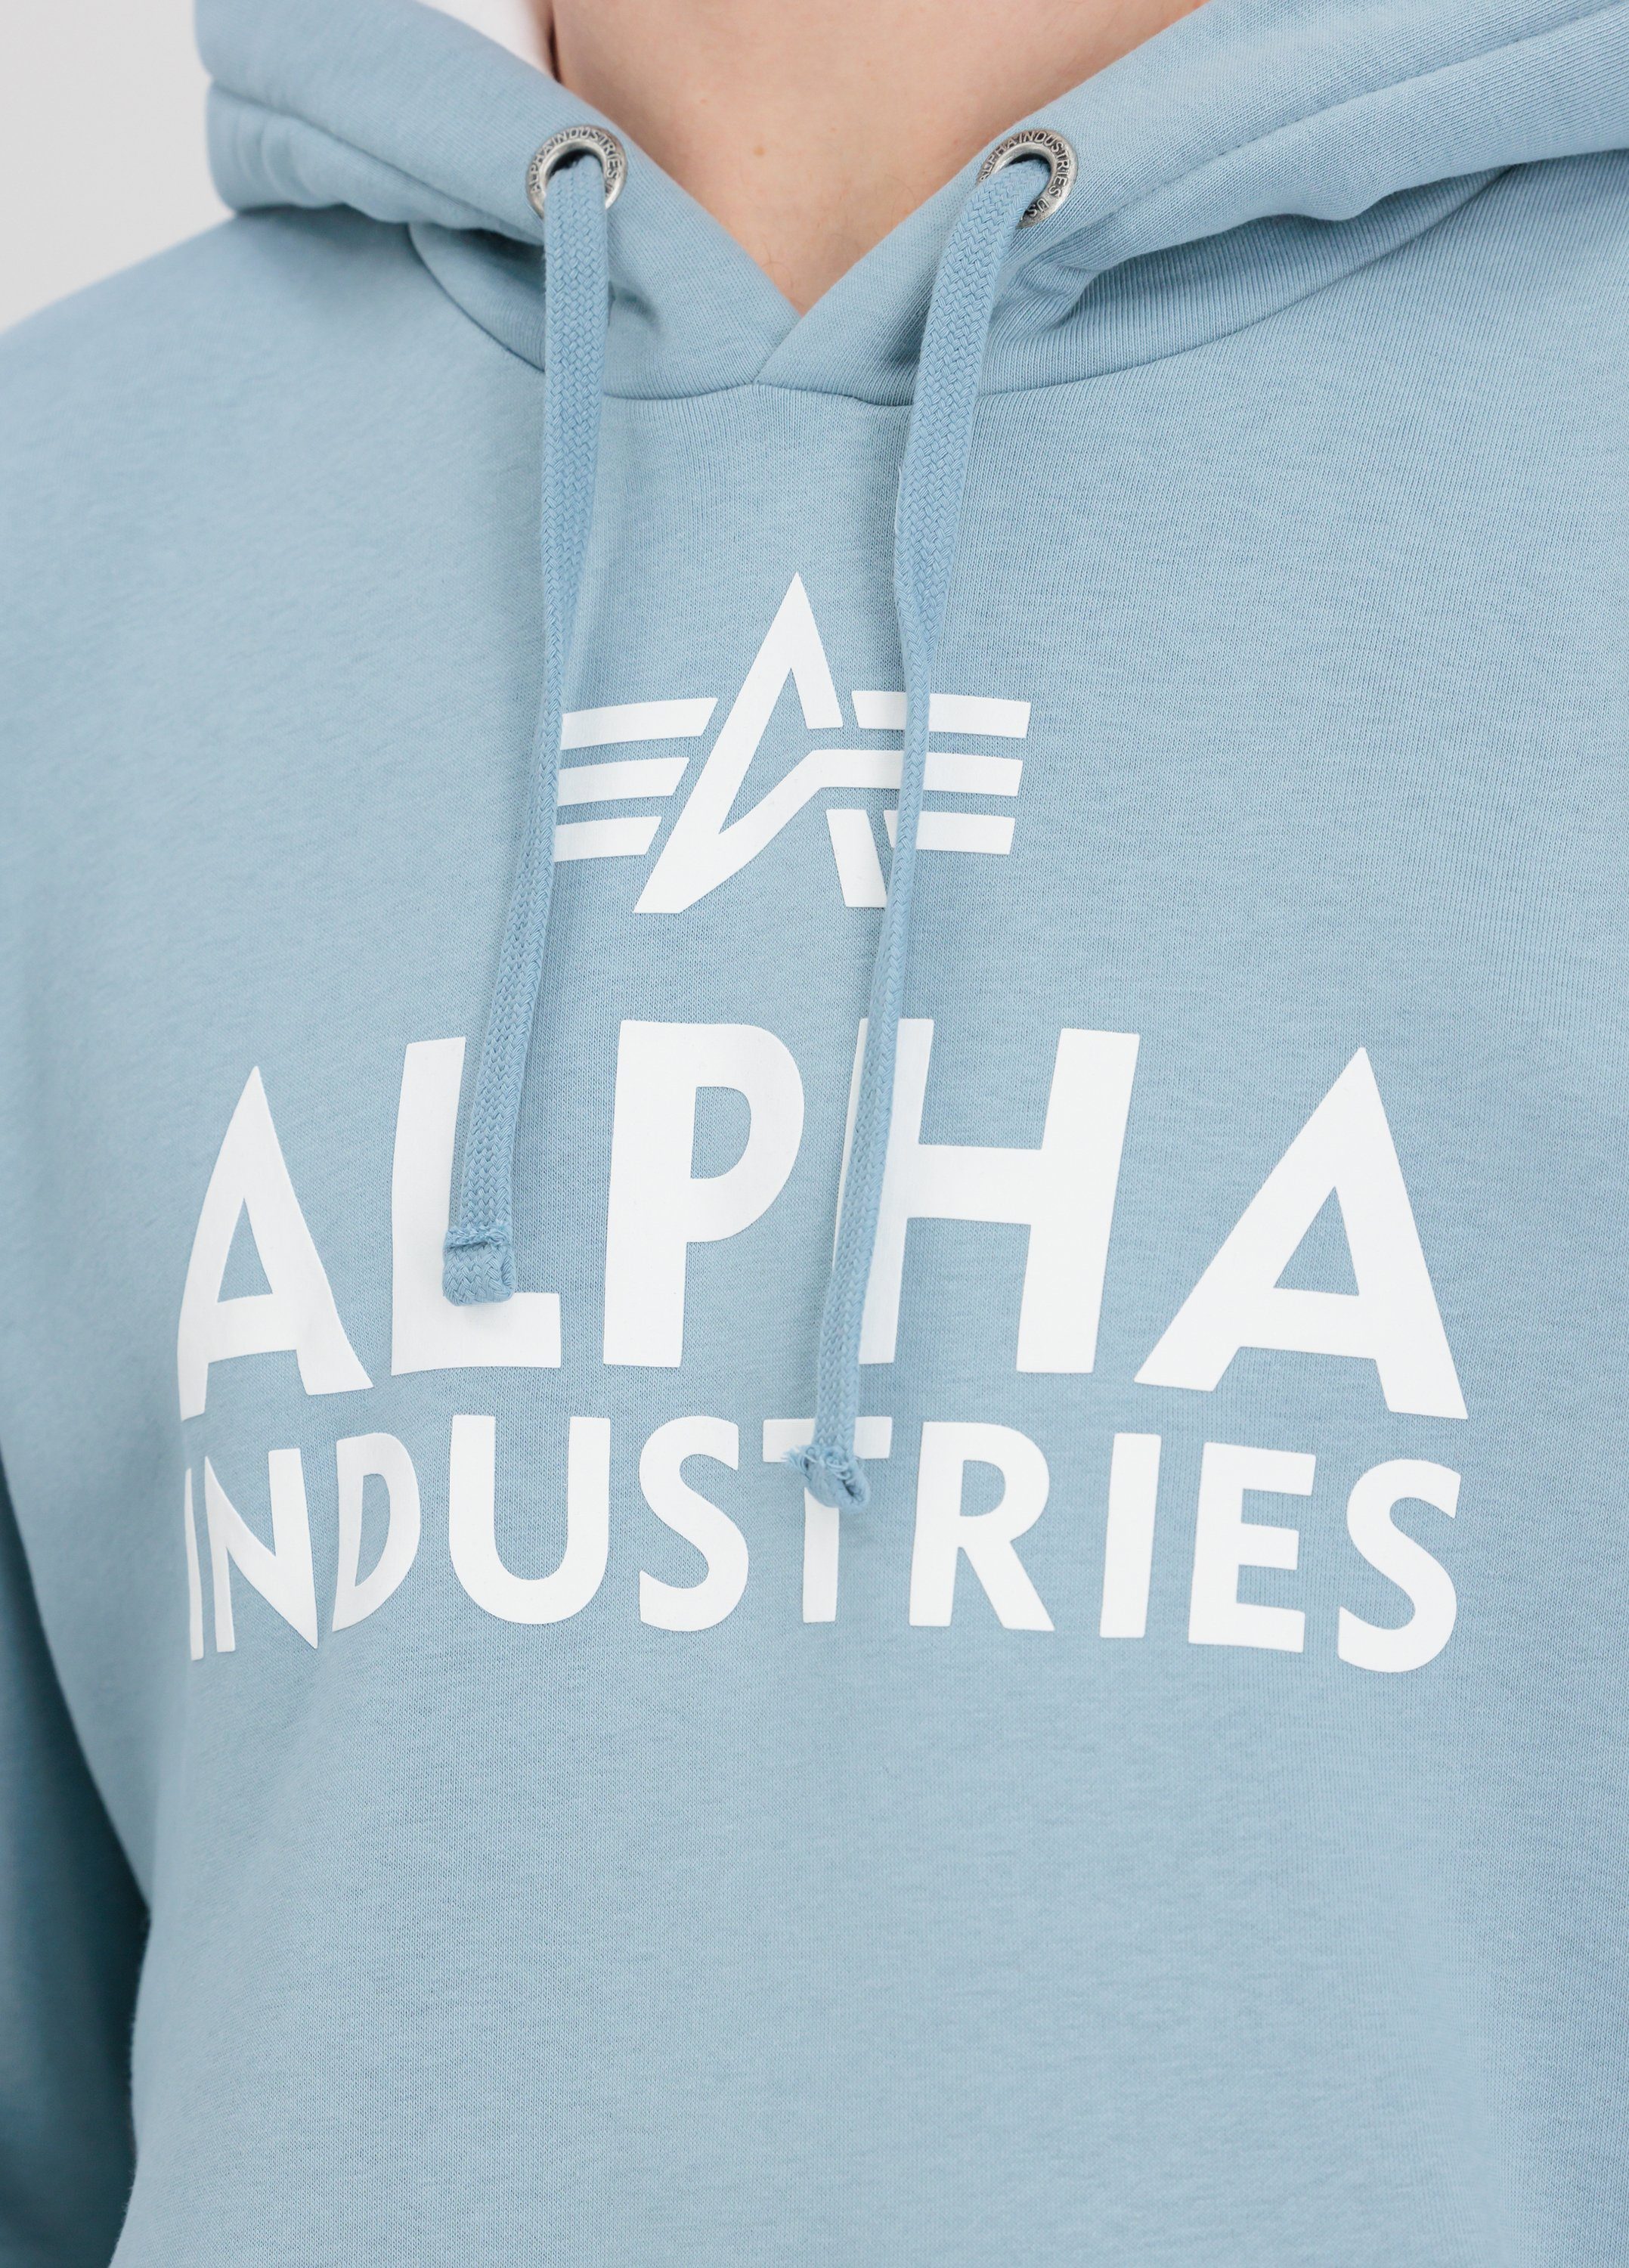 Alpha Hoodie Alpha Foam Industries Hoody greyblue - Hoodies Print Industries Men